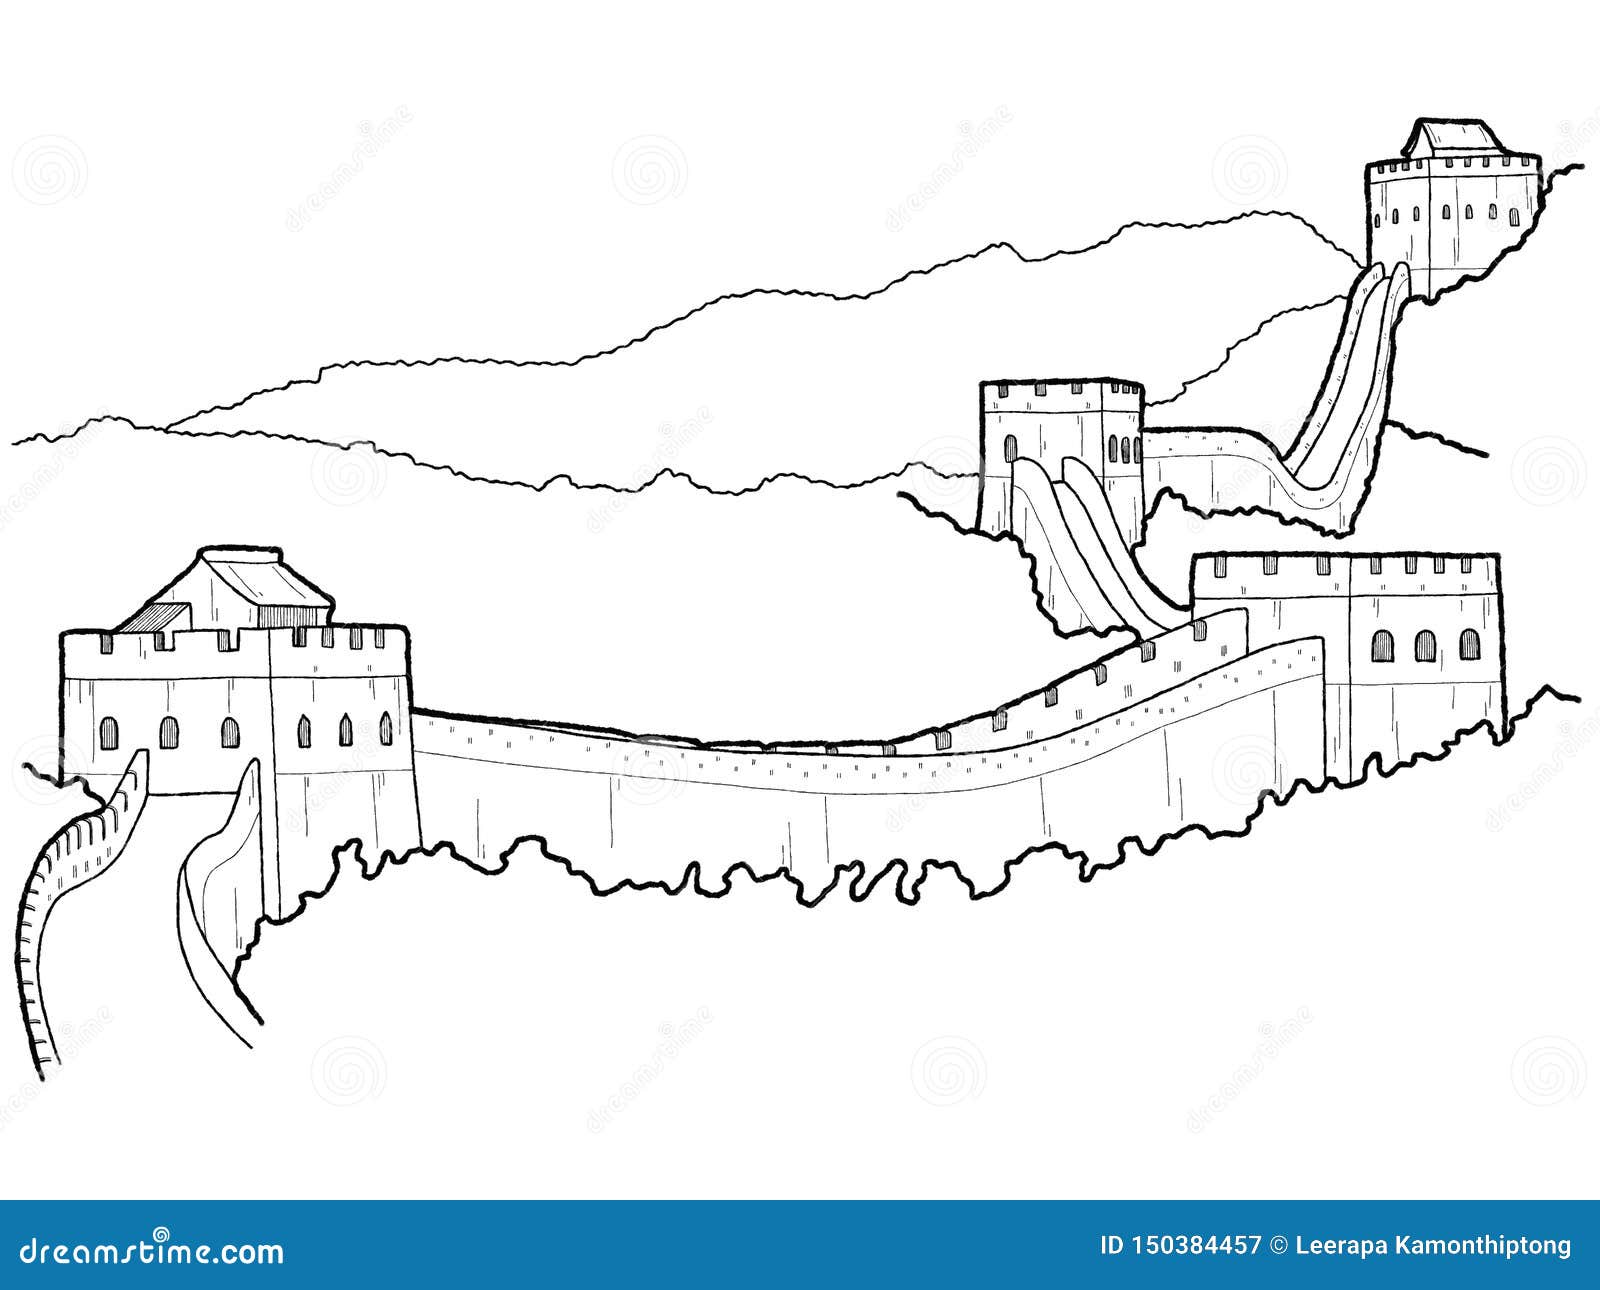 Великая китайская стена история 5 класс впр. Великая китайская стена нарисова. Великая китайская стена схематично. Китайская стена рисунок. Нарисовать китайскую стену.